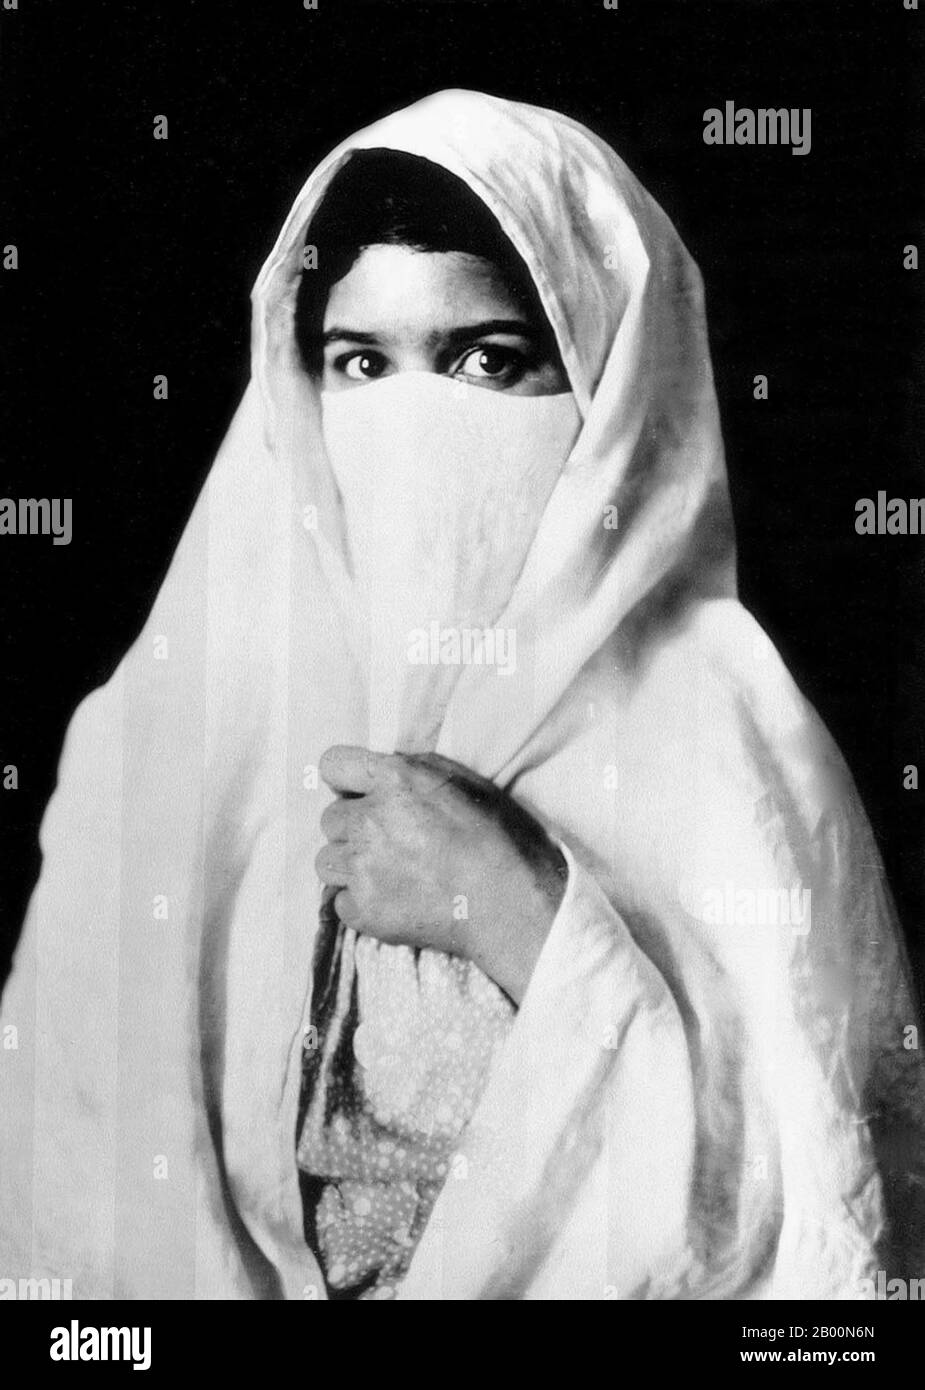 Algeria: Donna musulmana velata, primi 20 ° secolo. Fotografia di una donna velata - presumibilmente araba o beduina - di Algeria prodotta come souvenir per il nascente mercato turistico europeo. Foto Stock